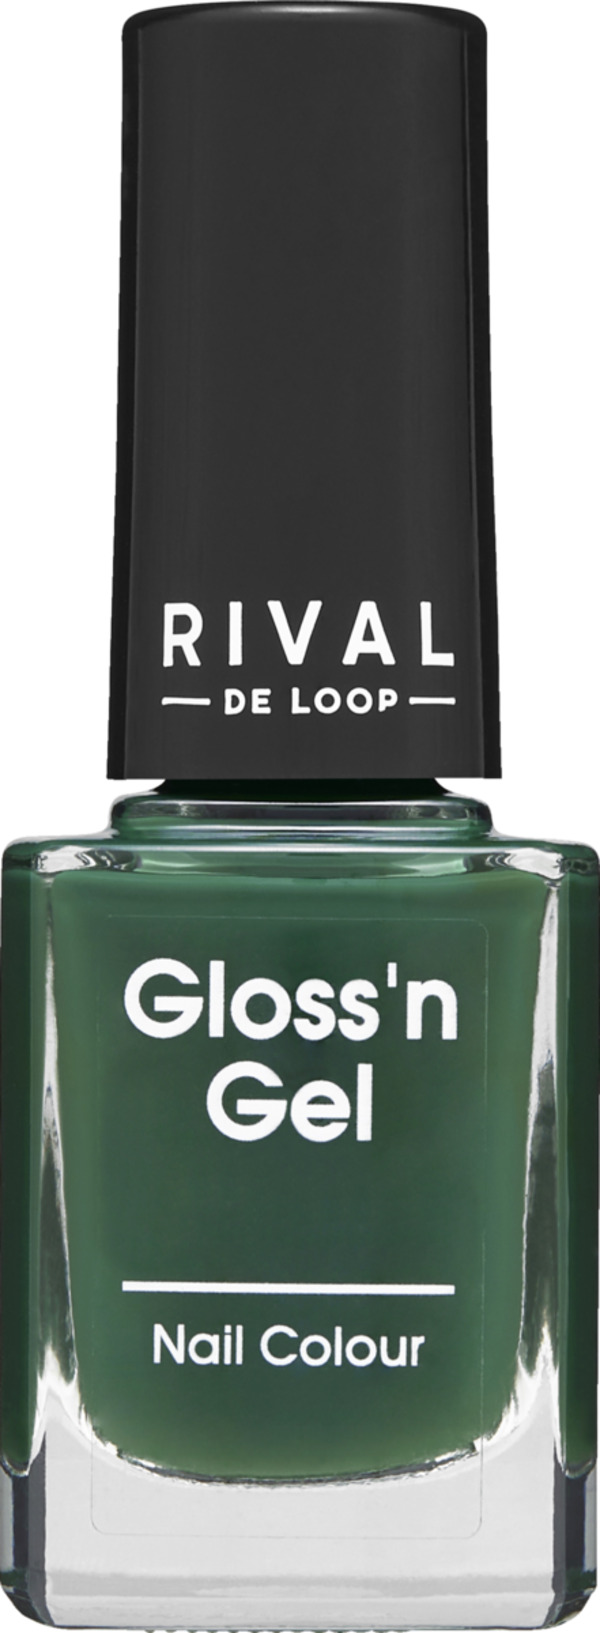 Bild 1 von RIVAL DE LOOP Gloss'n Gel Nail Colour 19